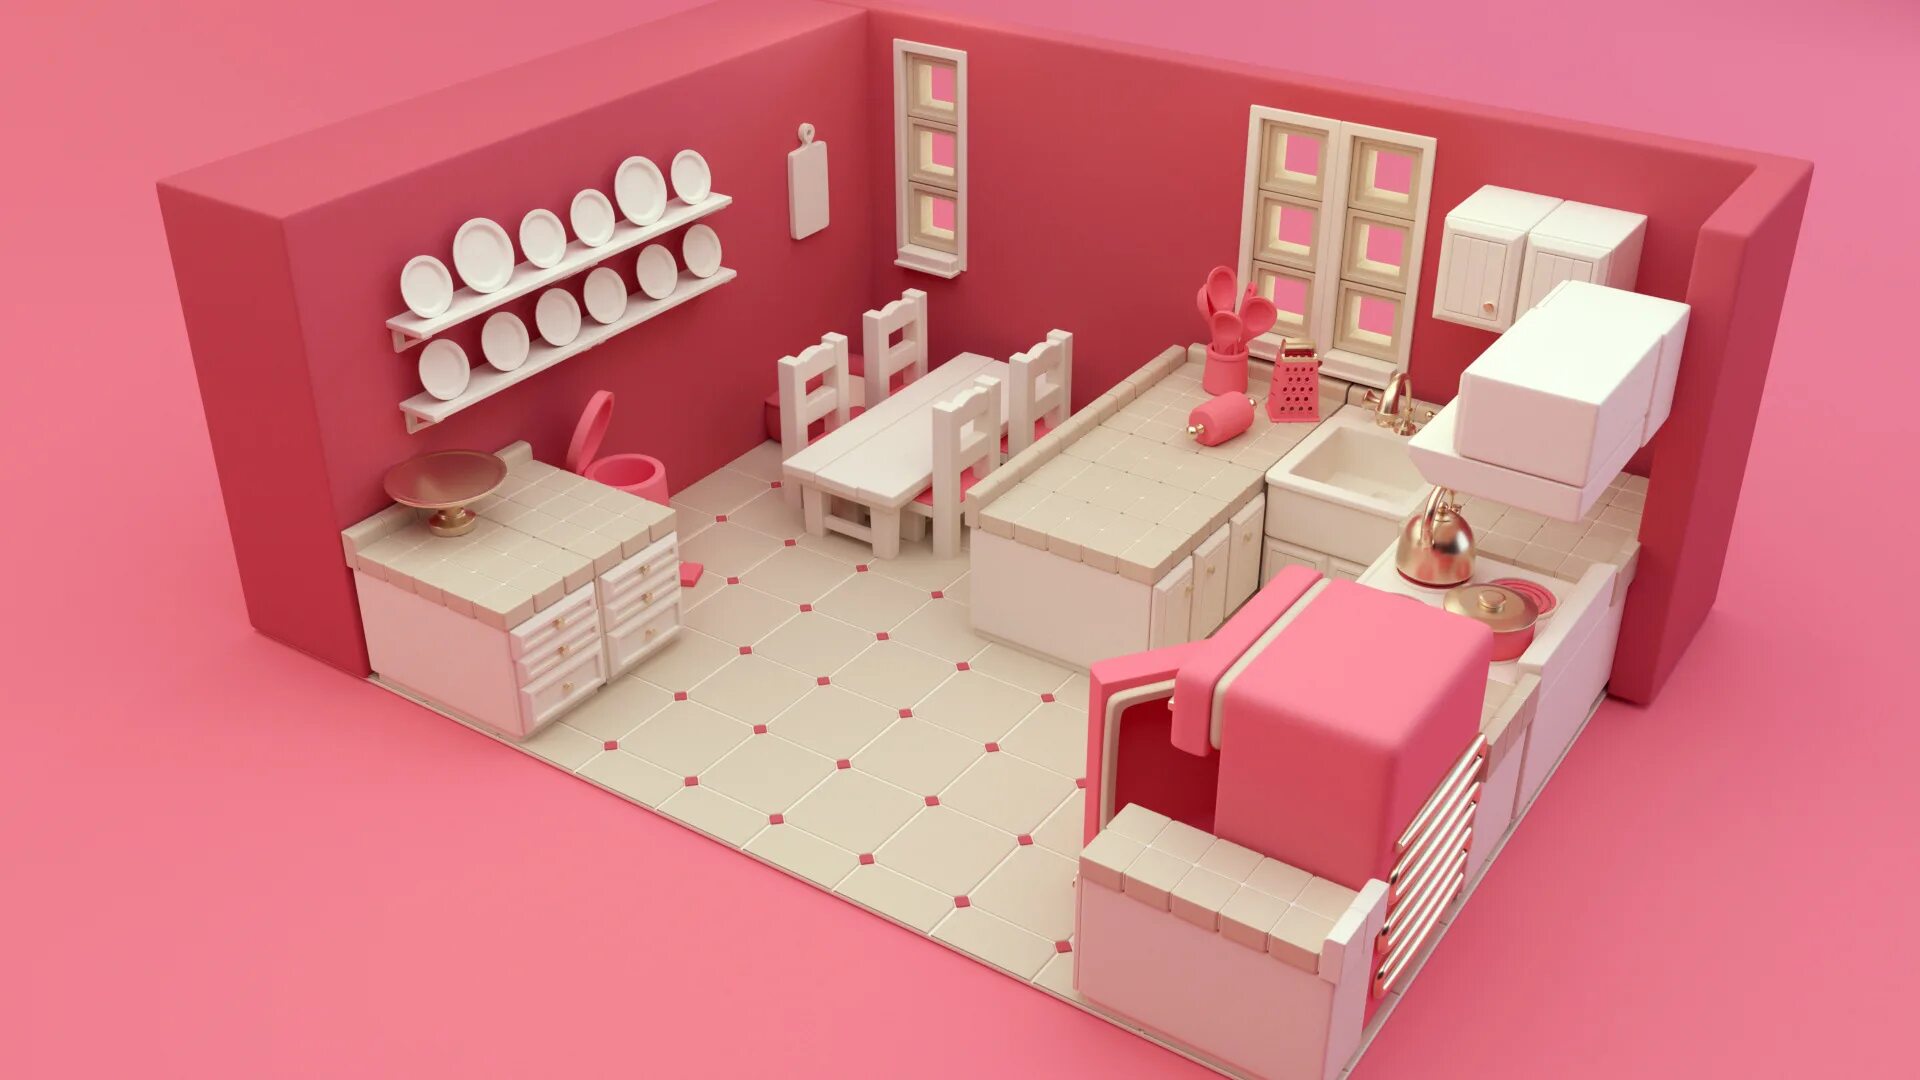 Candy shop 3. 3д модели для мастерской. 3d мастерская. Candy shop 3d. Мебель для Candy shop варианты.